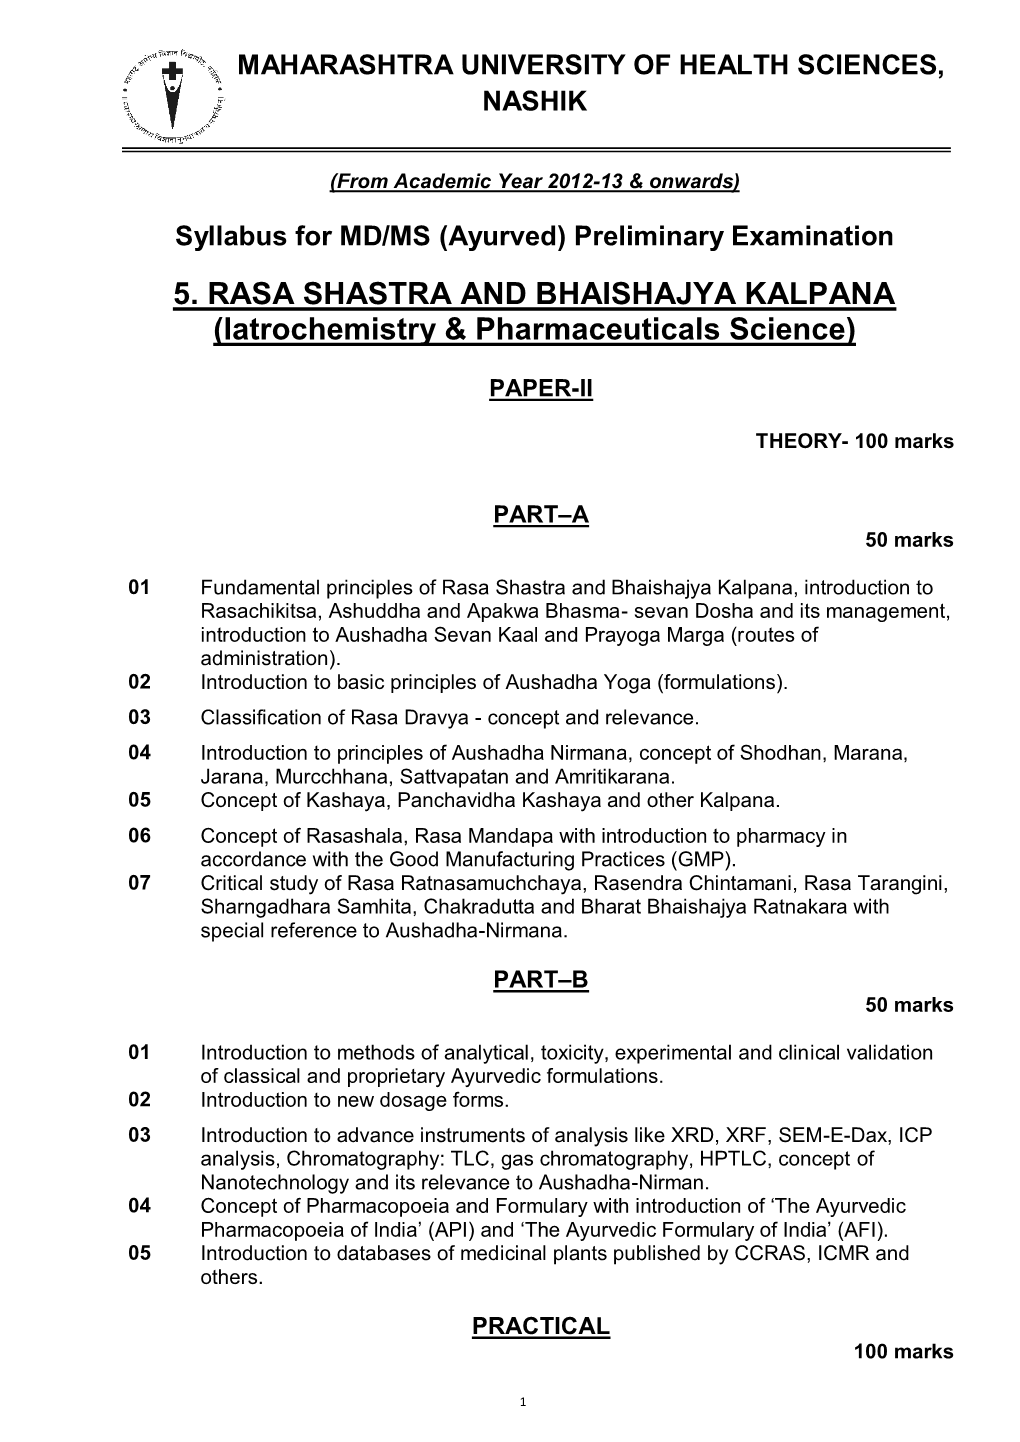 5. RASA SHASTRA and BHAISHAJYA KALPANA (Iatrochemistry & Pharmaceuticals Science)